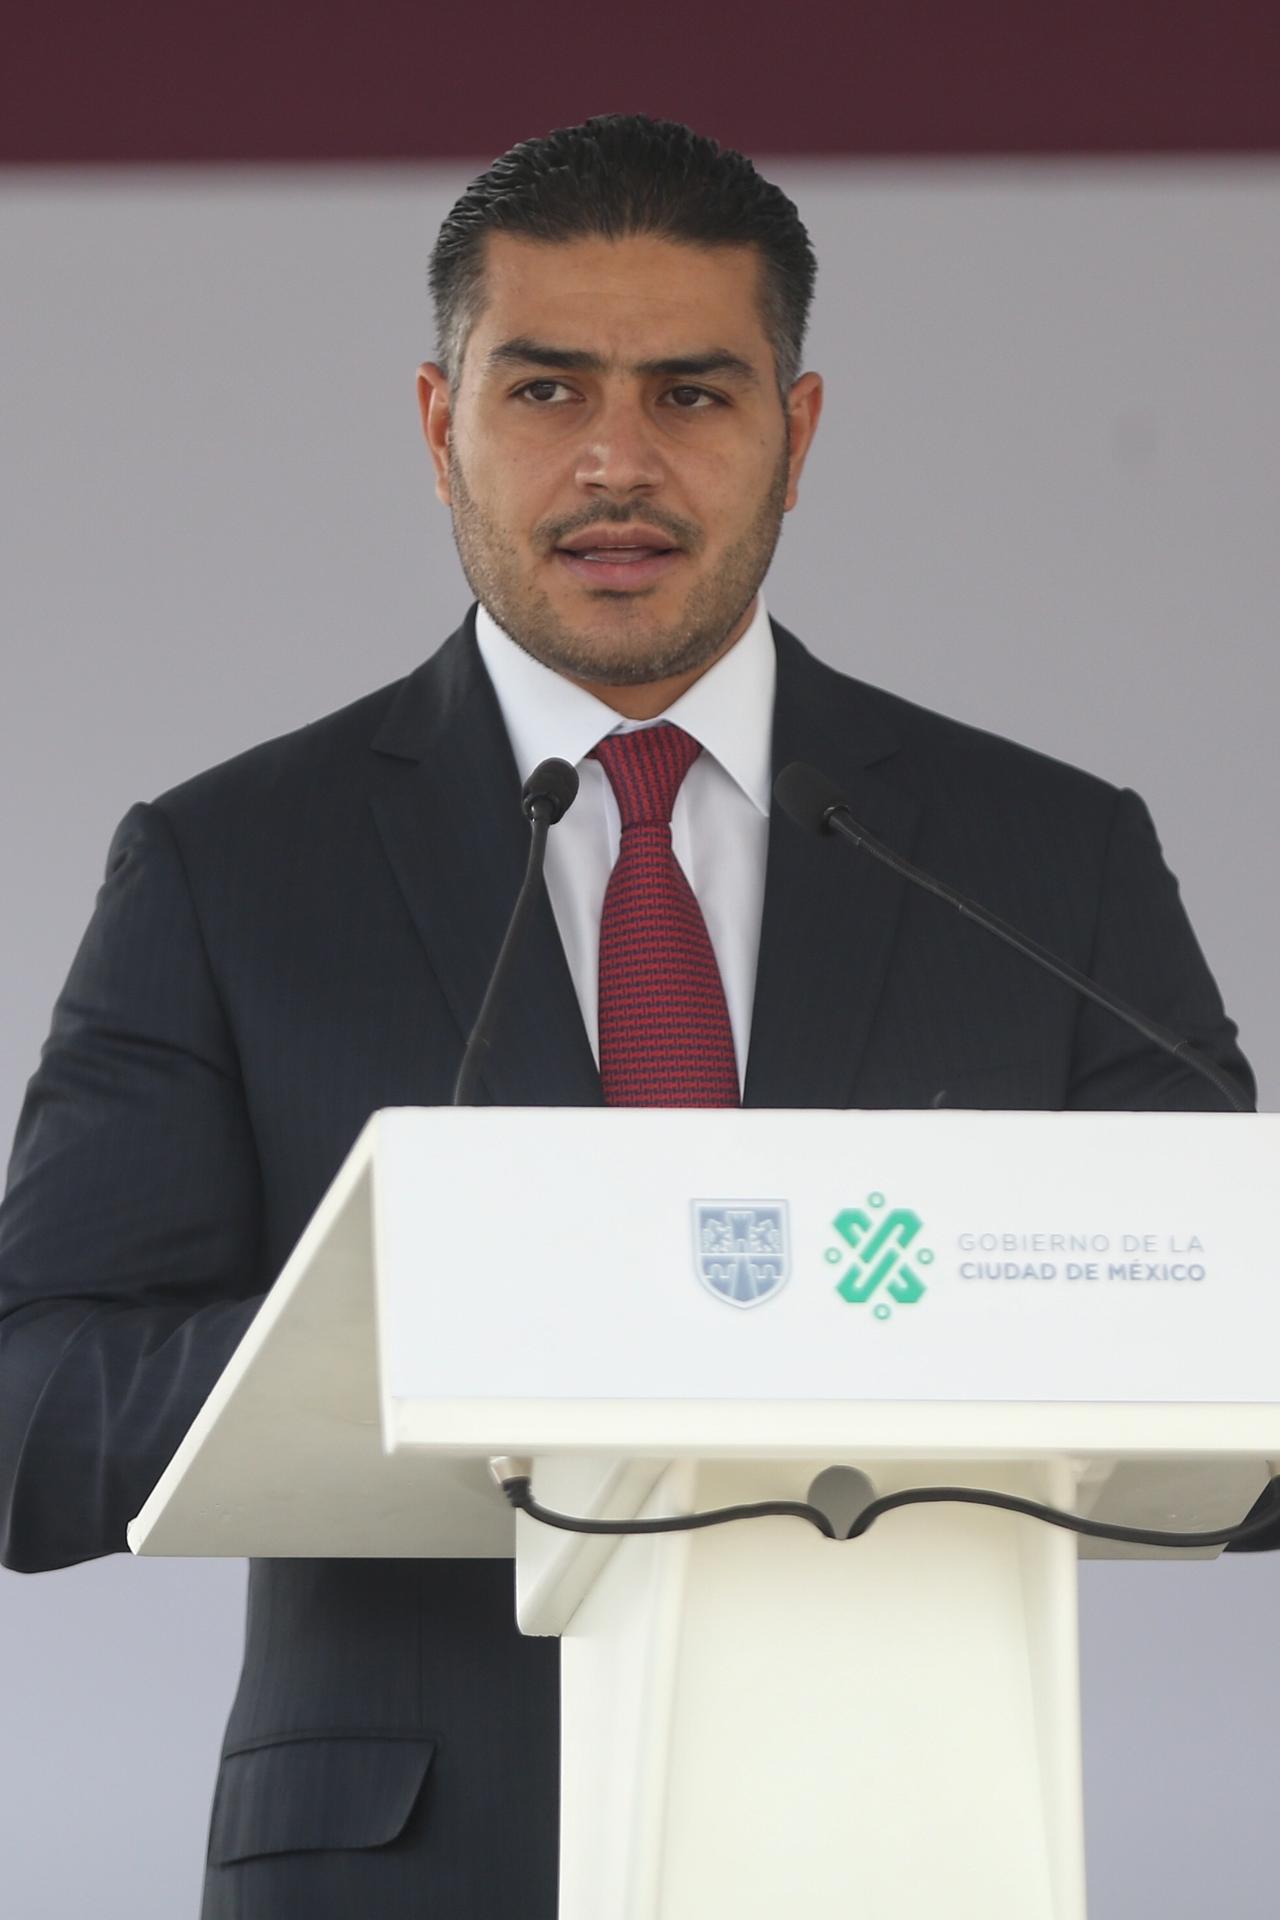 El exsecretario de Seguridad Ciudadana, Omar García Harfuch. Imagen de archivo. EFE/Sasahenka Gutiérrez